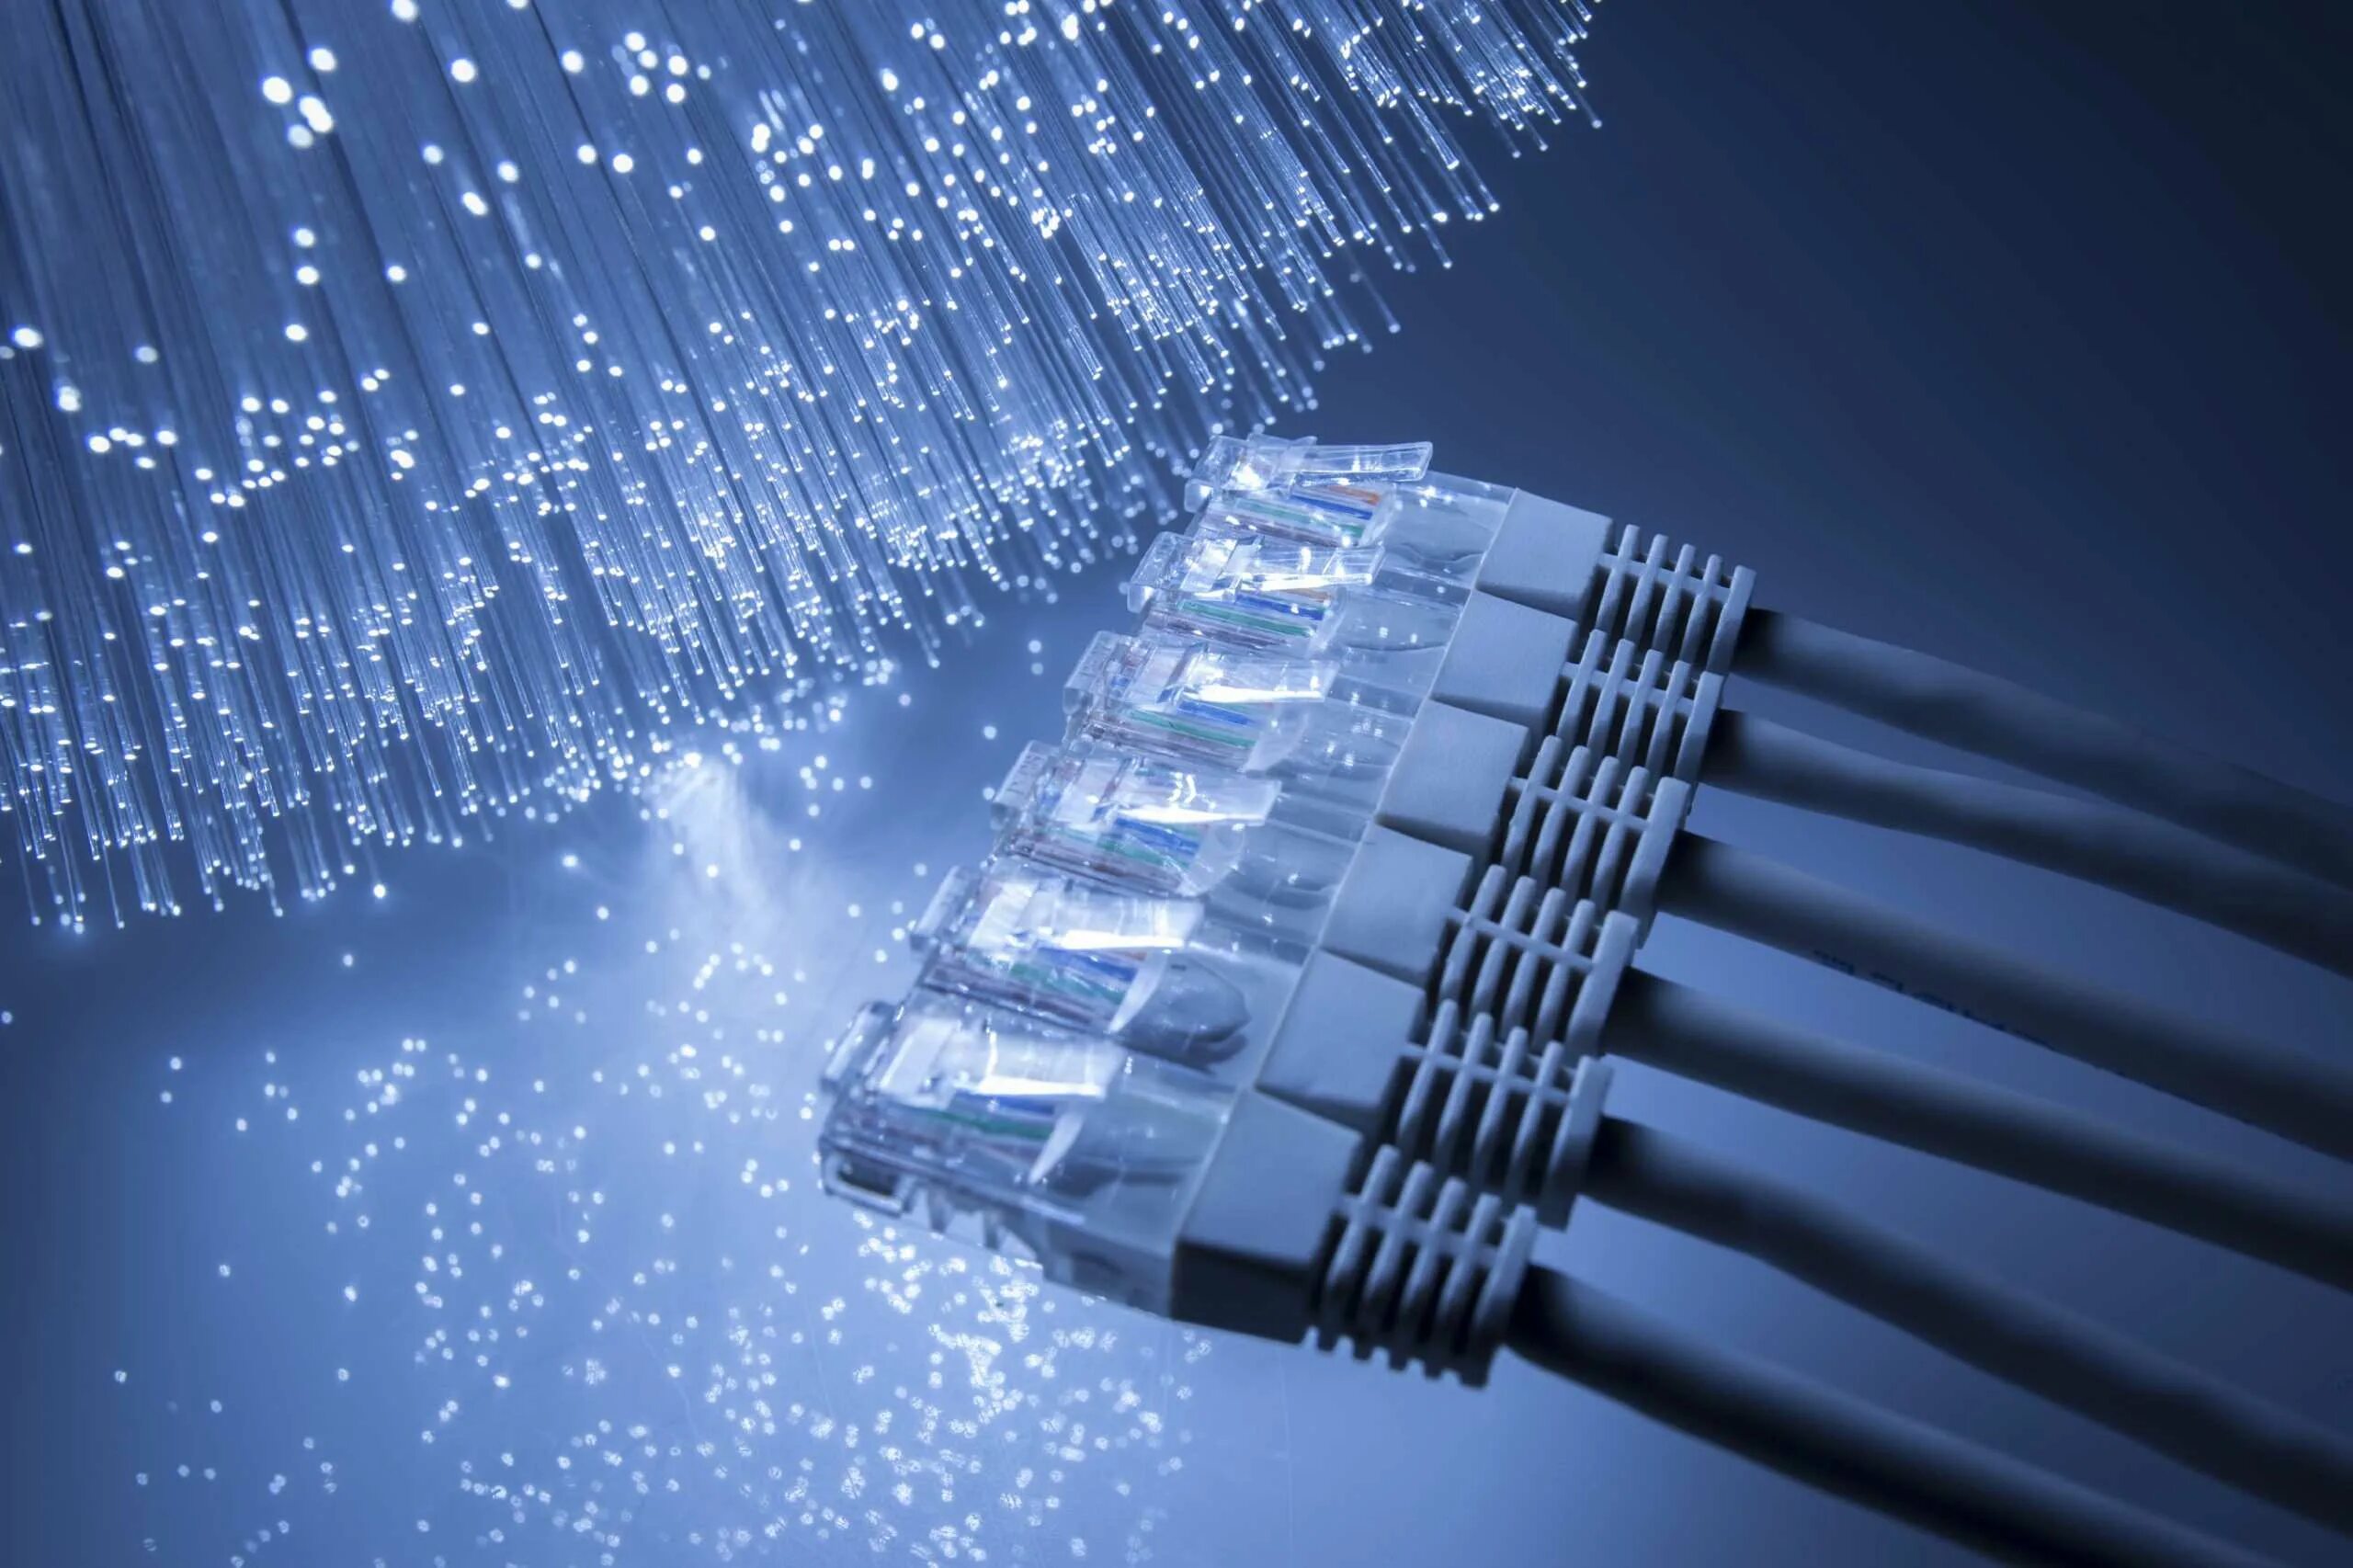 Сети connection. Провод Ethernet ВОЛС. Оптоволокно сетевой кабель. Волоконно-оптические линии связи. Сетевое оборудование компьютерных сетей оптоволокно.